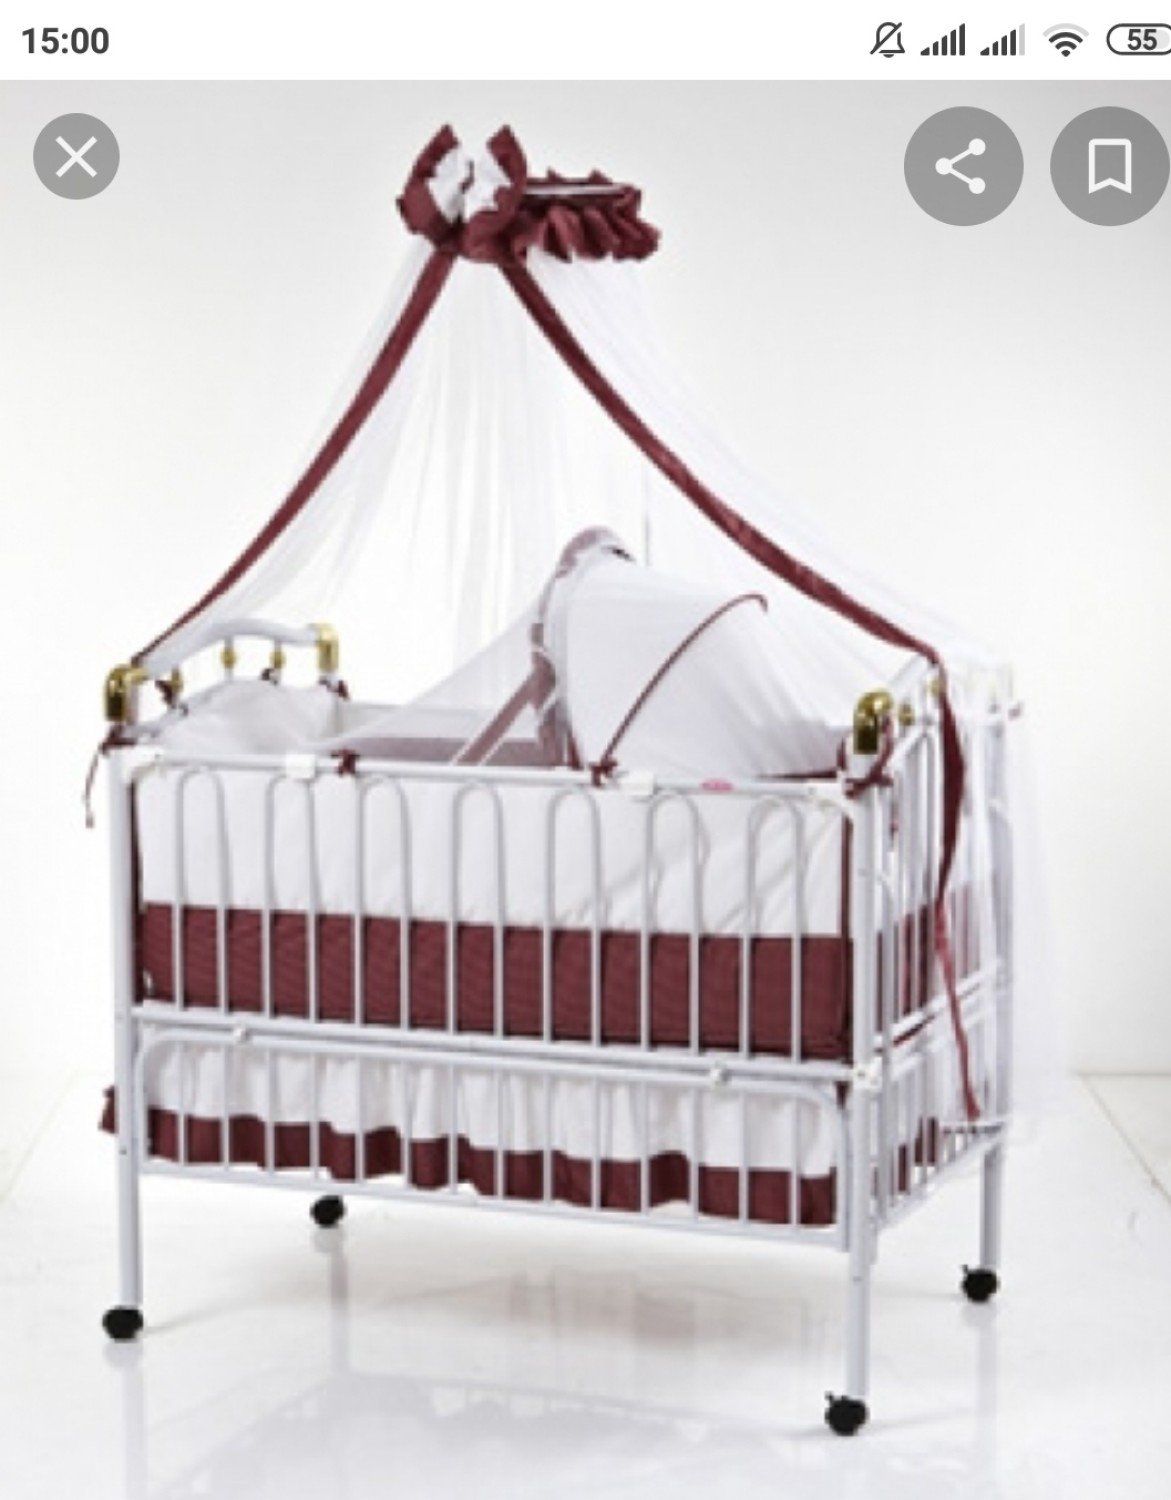 двуспальная кровать с люлькой для новорожденных